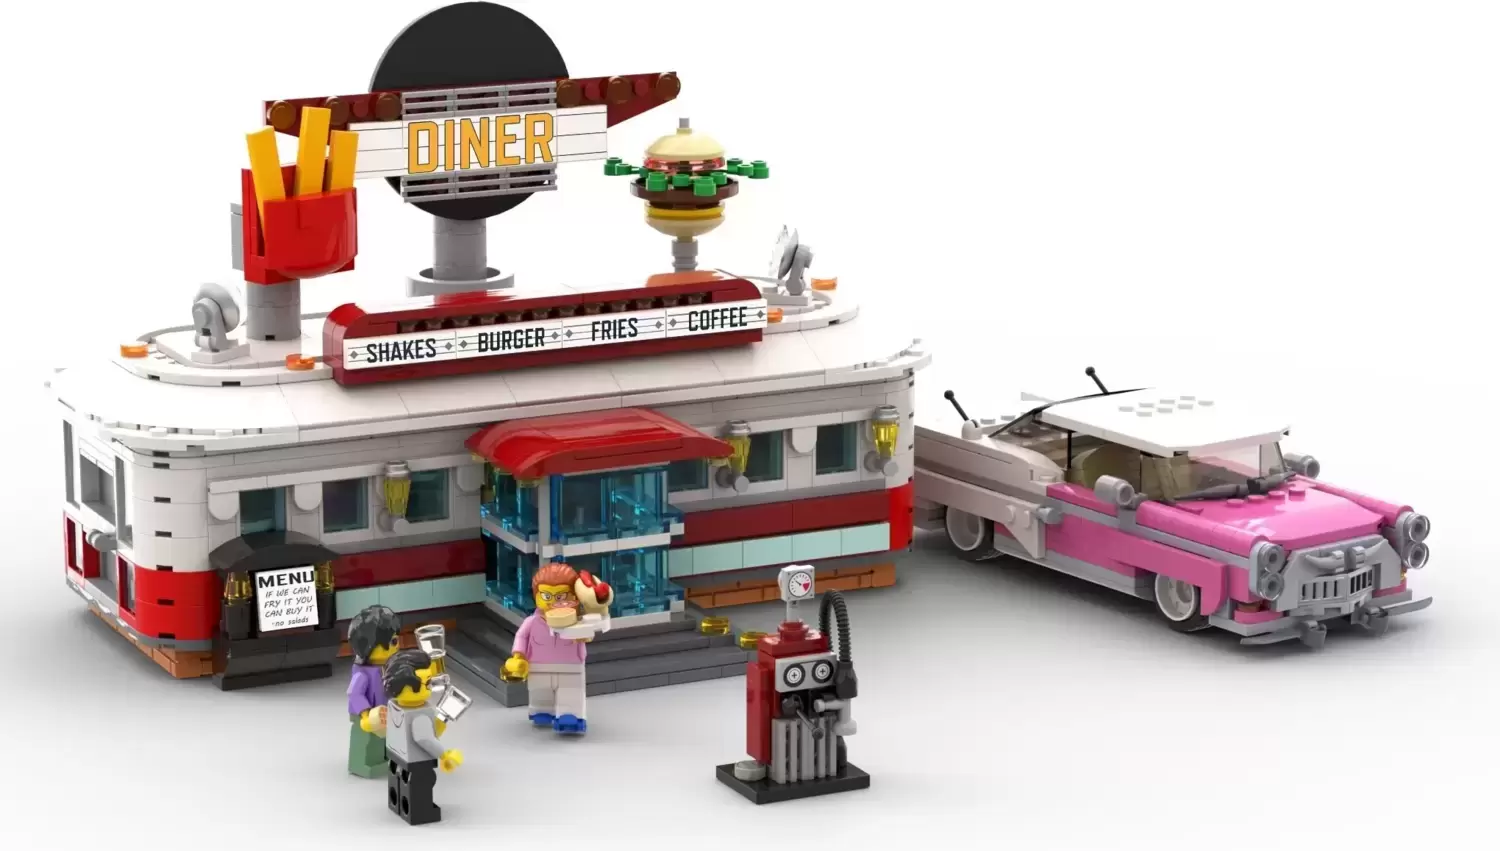 1950's Diner - LEGO Bricklink set 910011